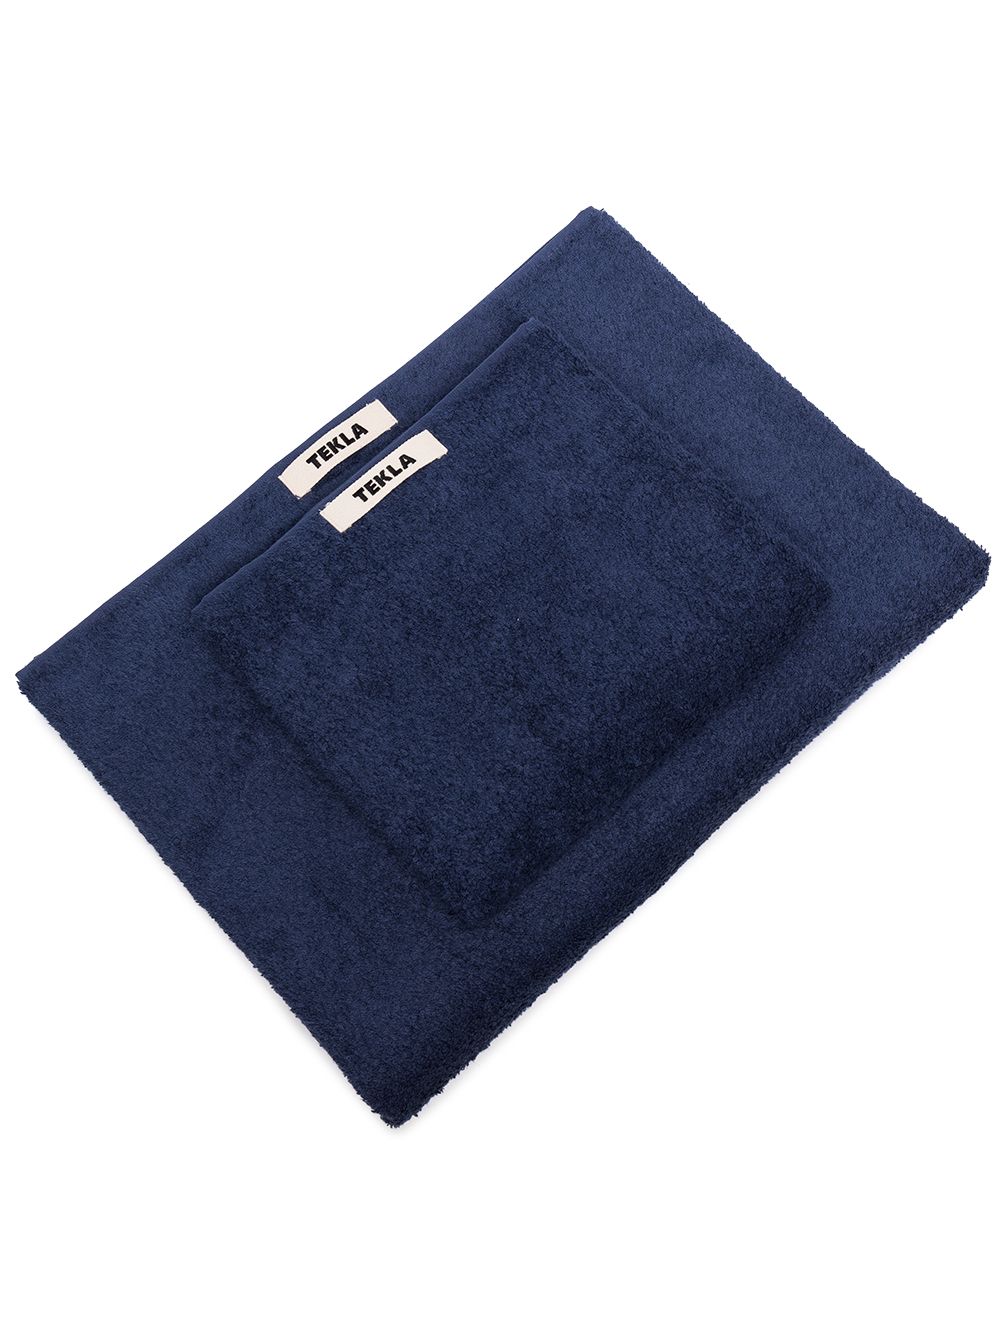 TEKLA Handtuch-Set mit Logo - Blau